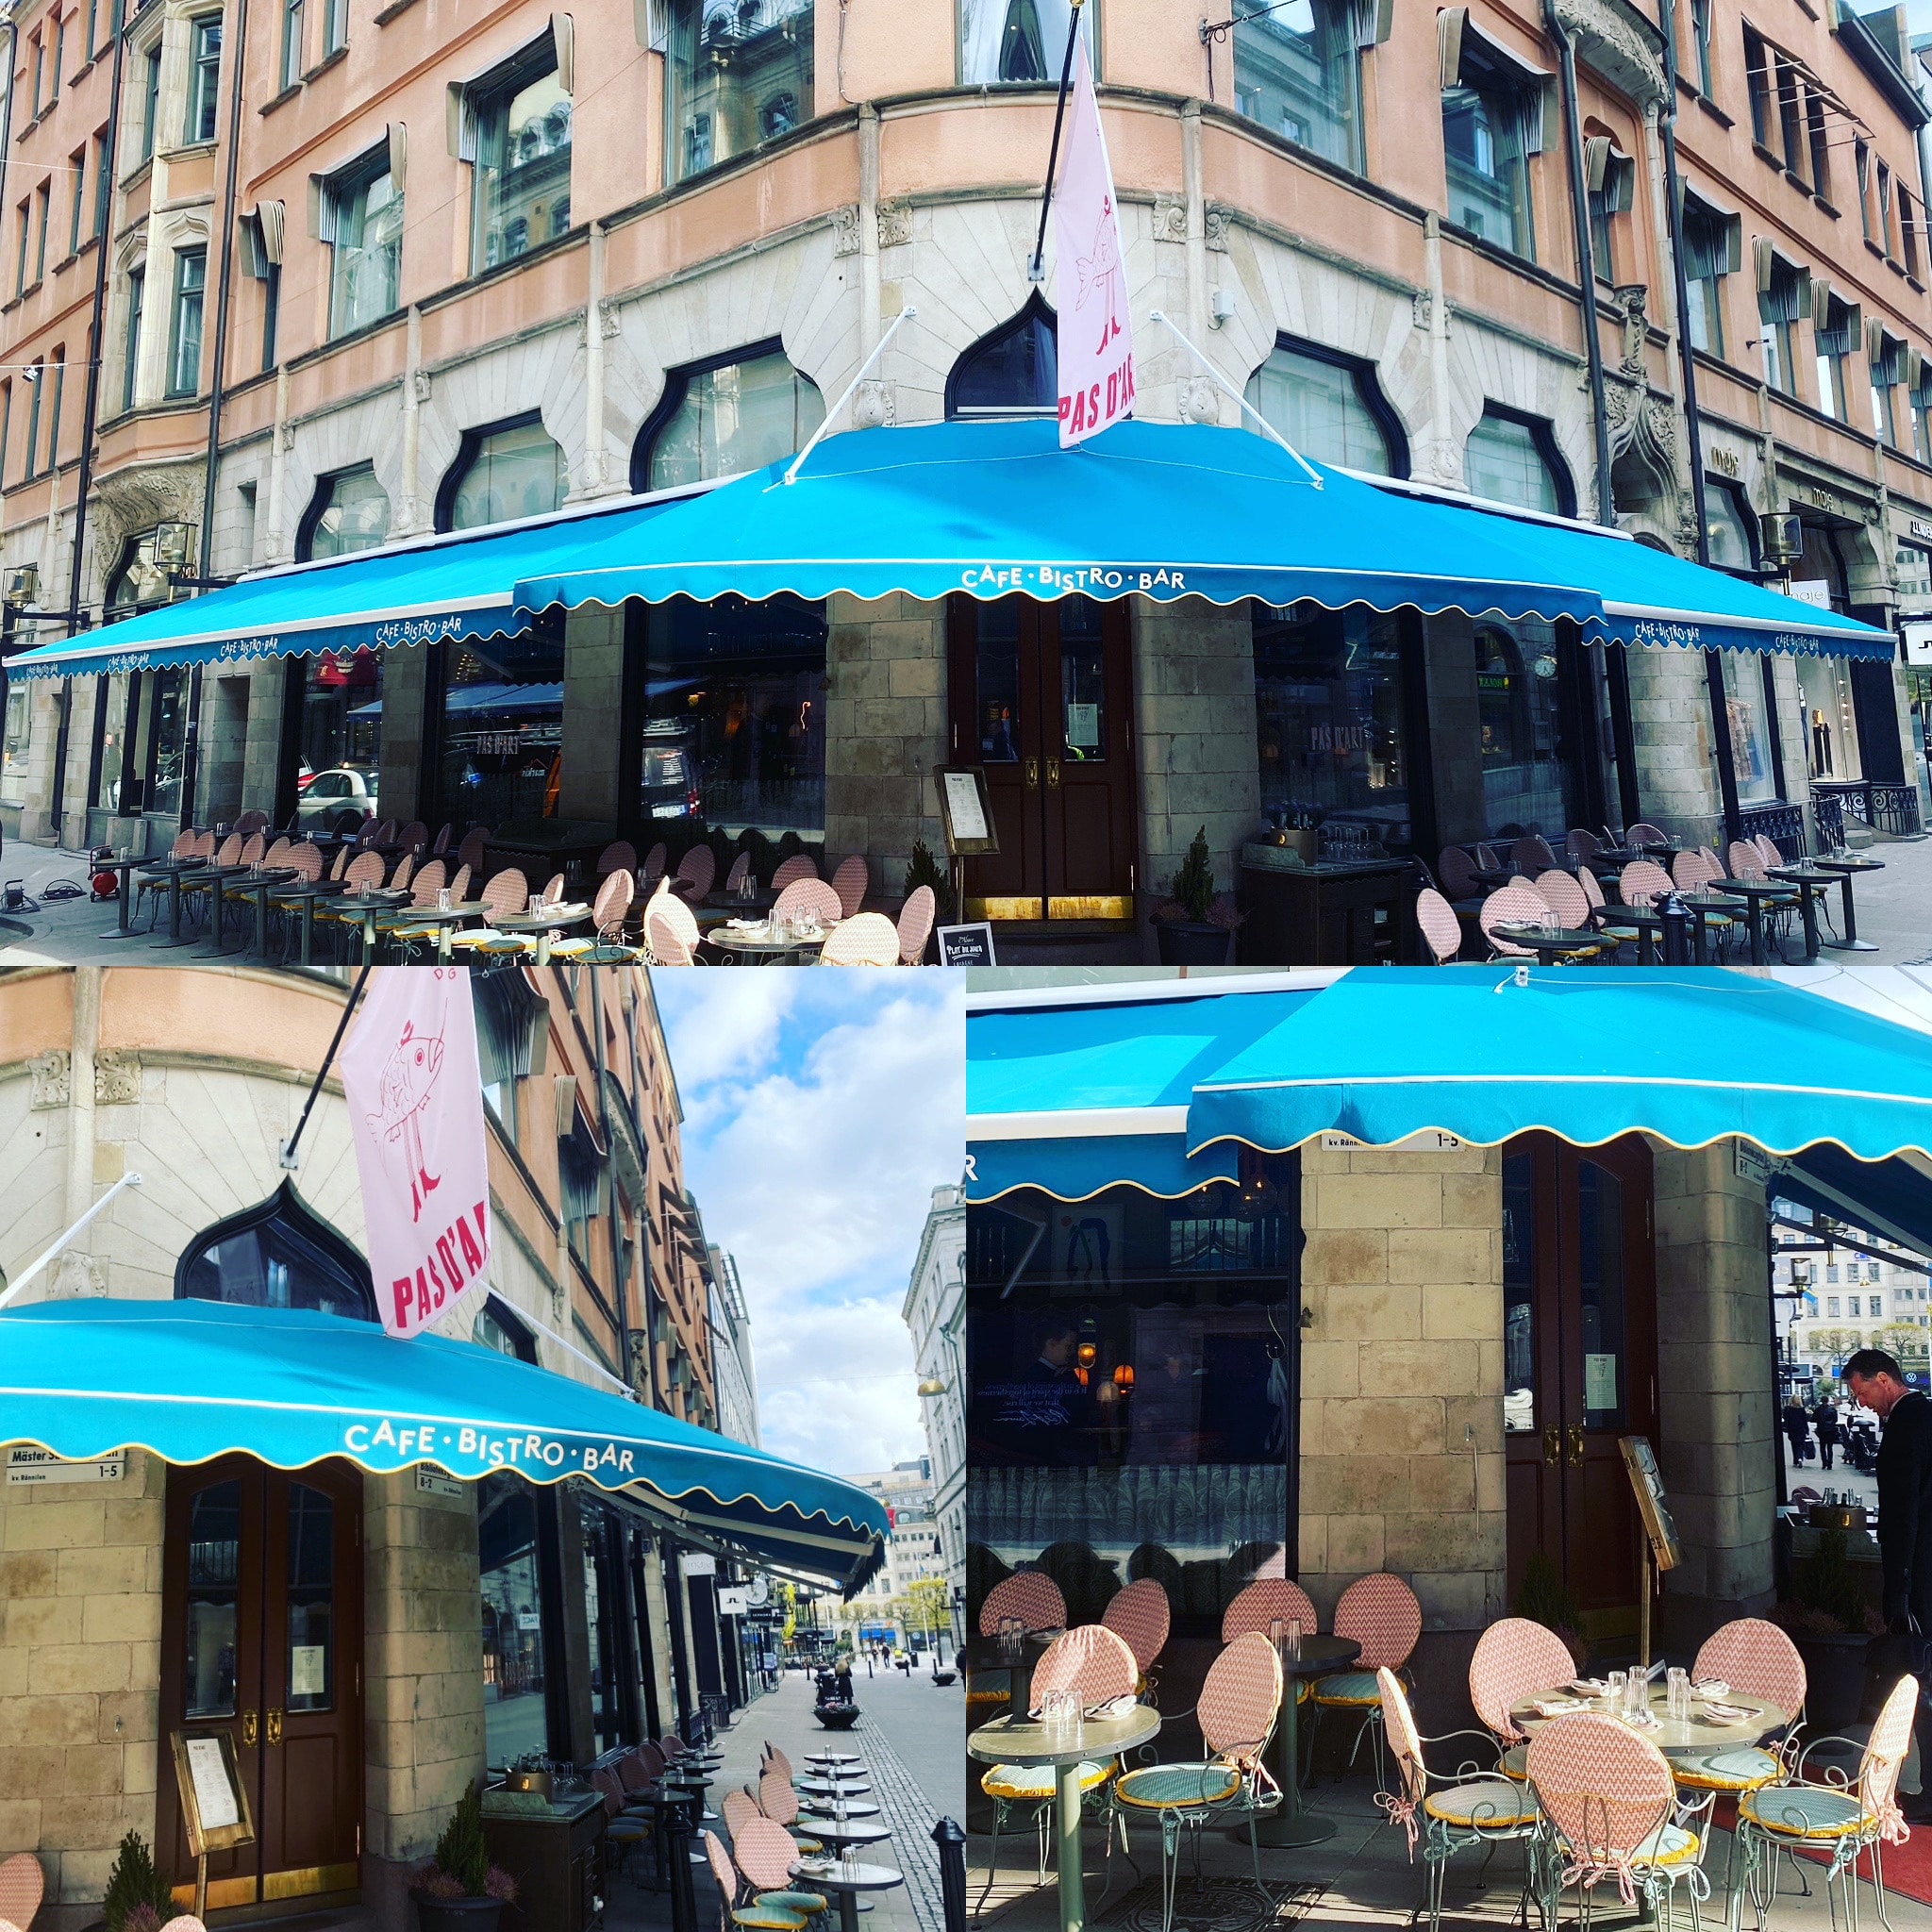 Eftersom restaurangen ligger i en hörnbyggnad skapades tre markiser i en vacker blå färg som är väl anpassade efter byggnadens form